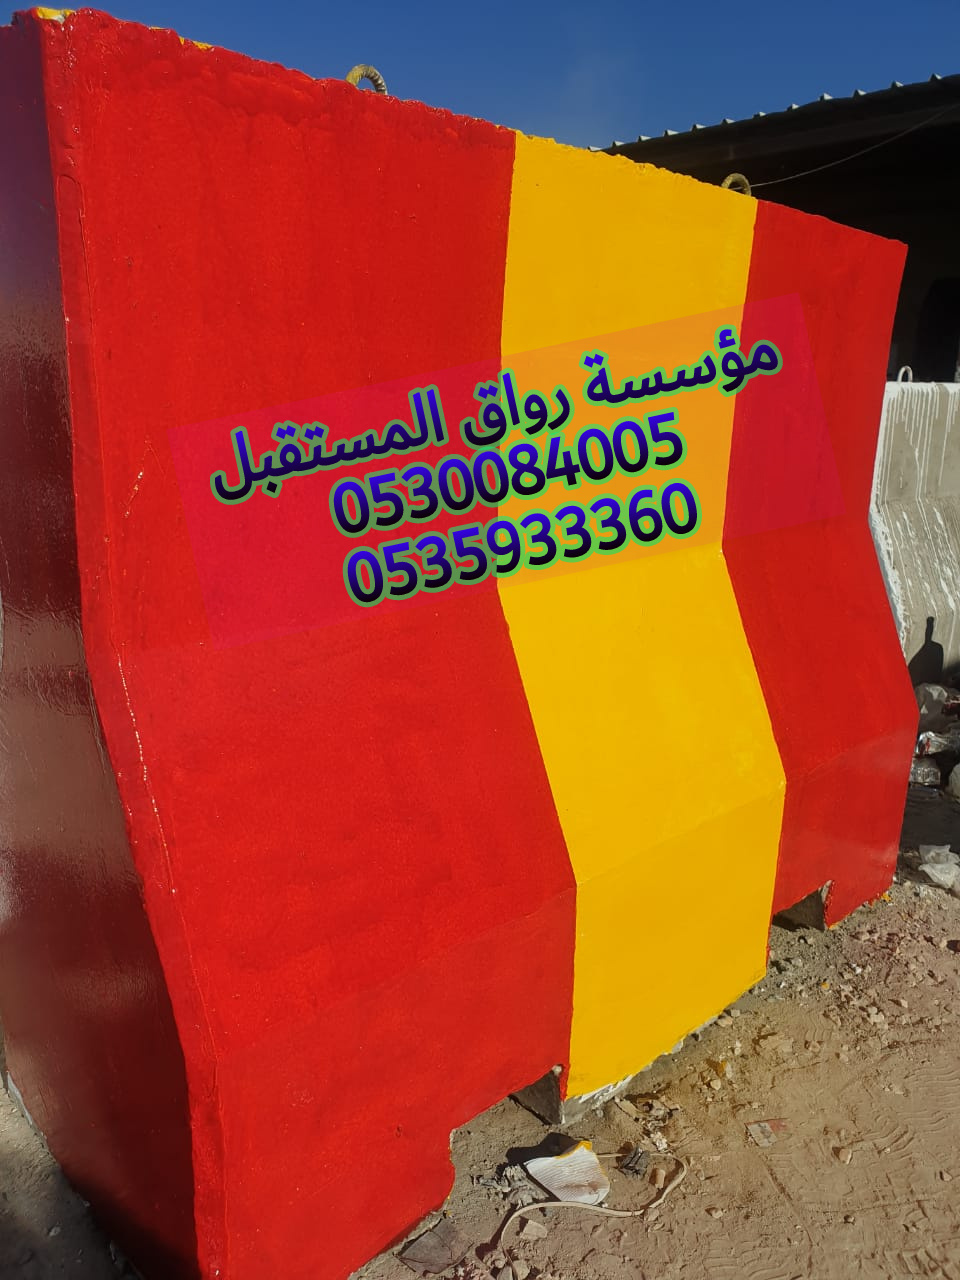 مؤسسة رواق المستقبل لبيع الحواجز الخرسانية والمصدات في الرياض 0530084005  P_1503s8q600